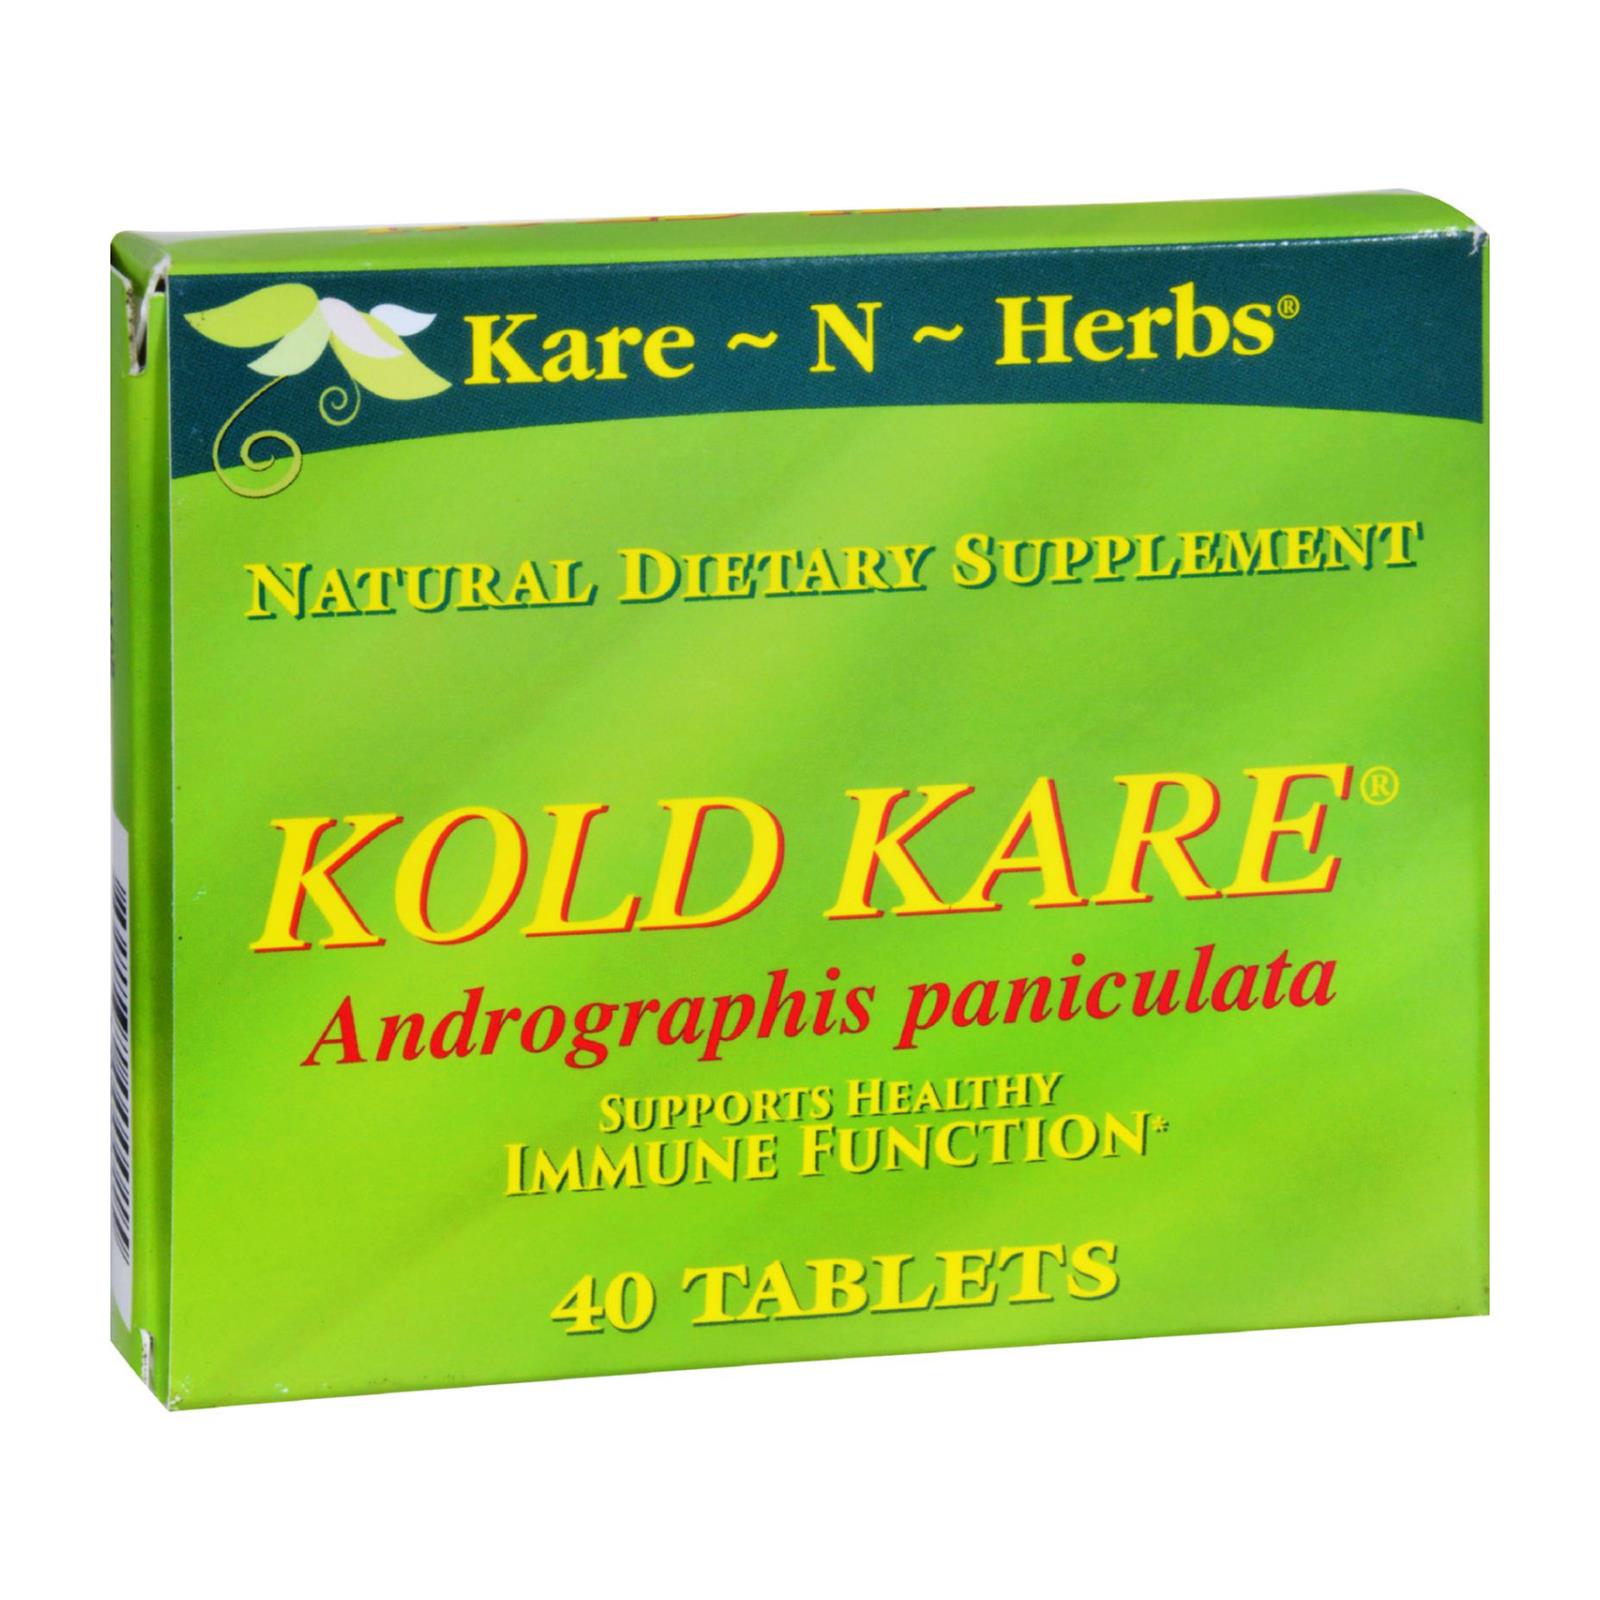 Kare-N-Herbs Kold Kare - 40 Tablets - image 1 of 4